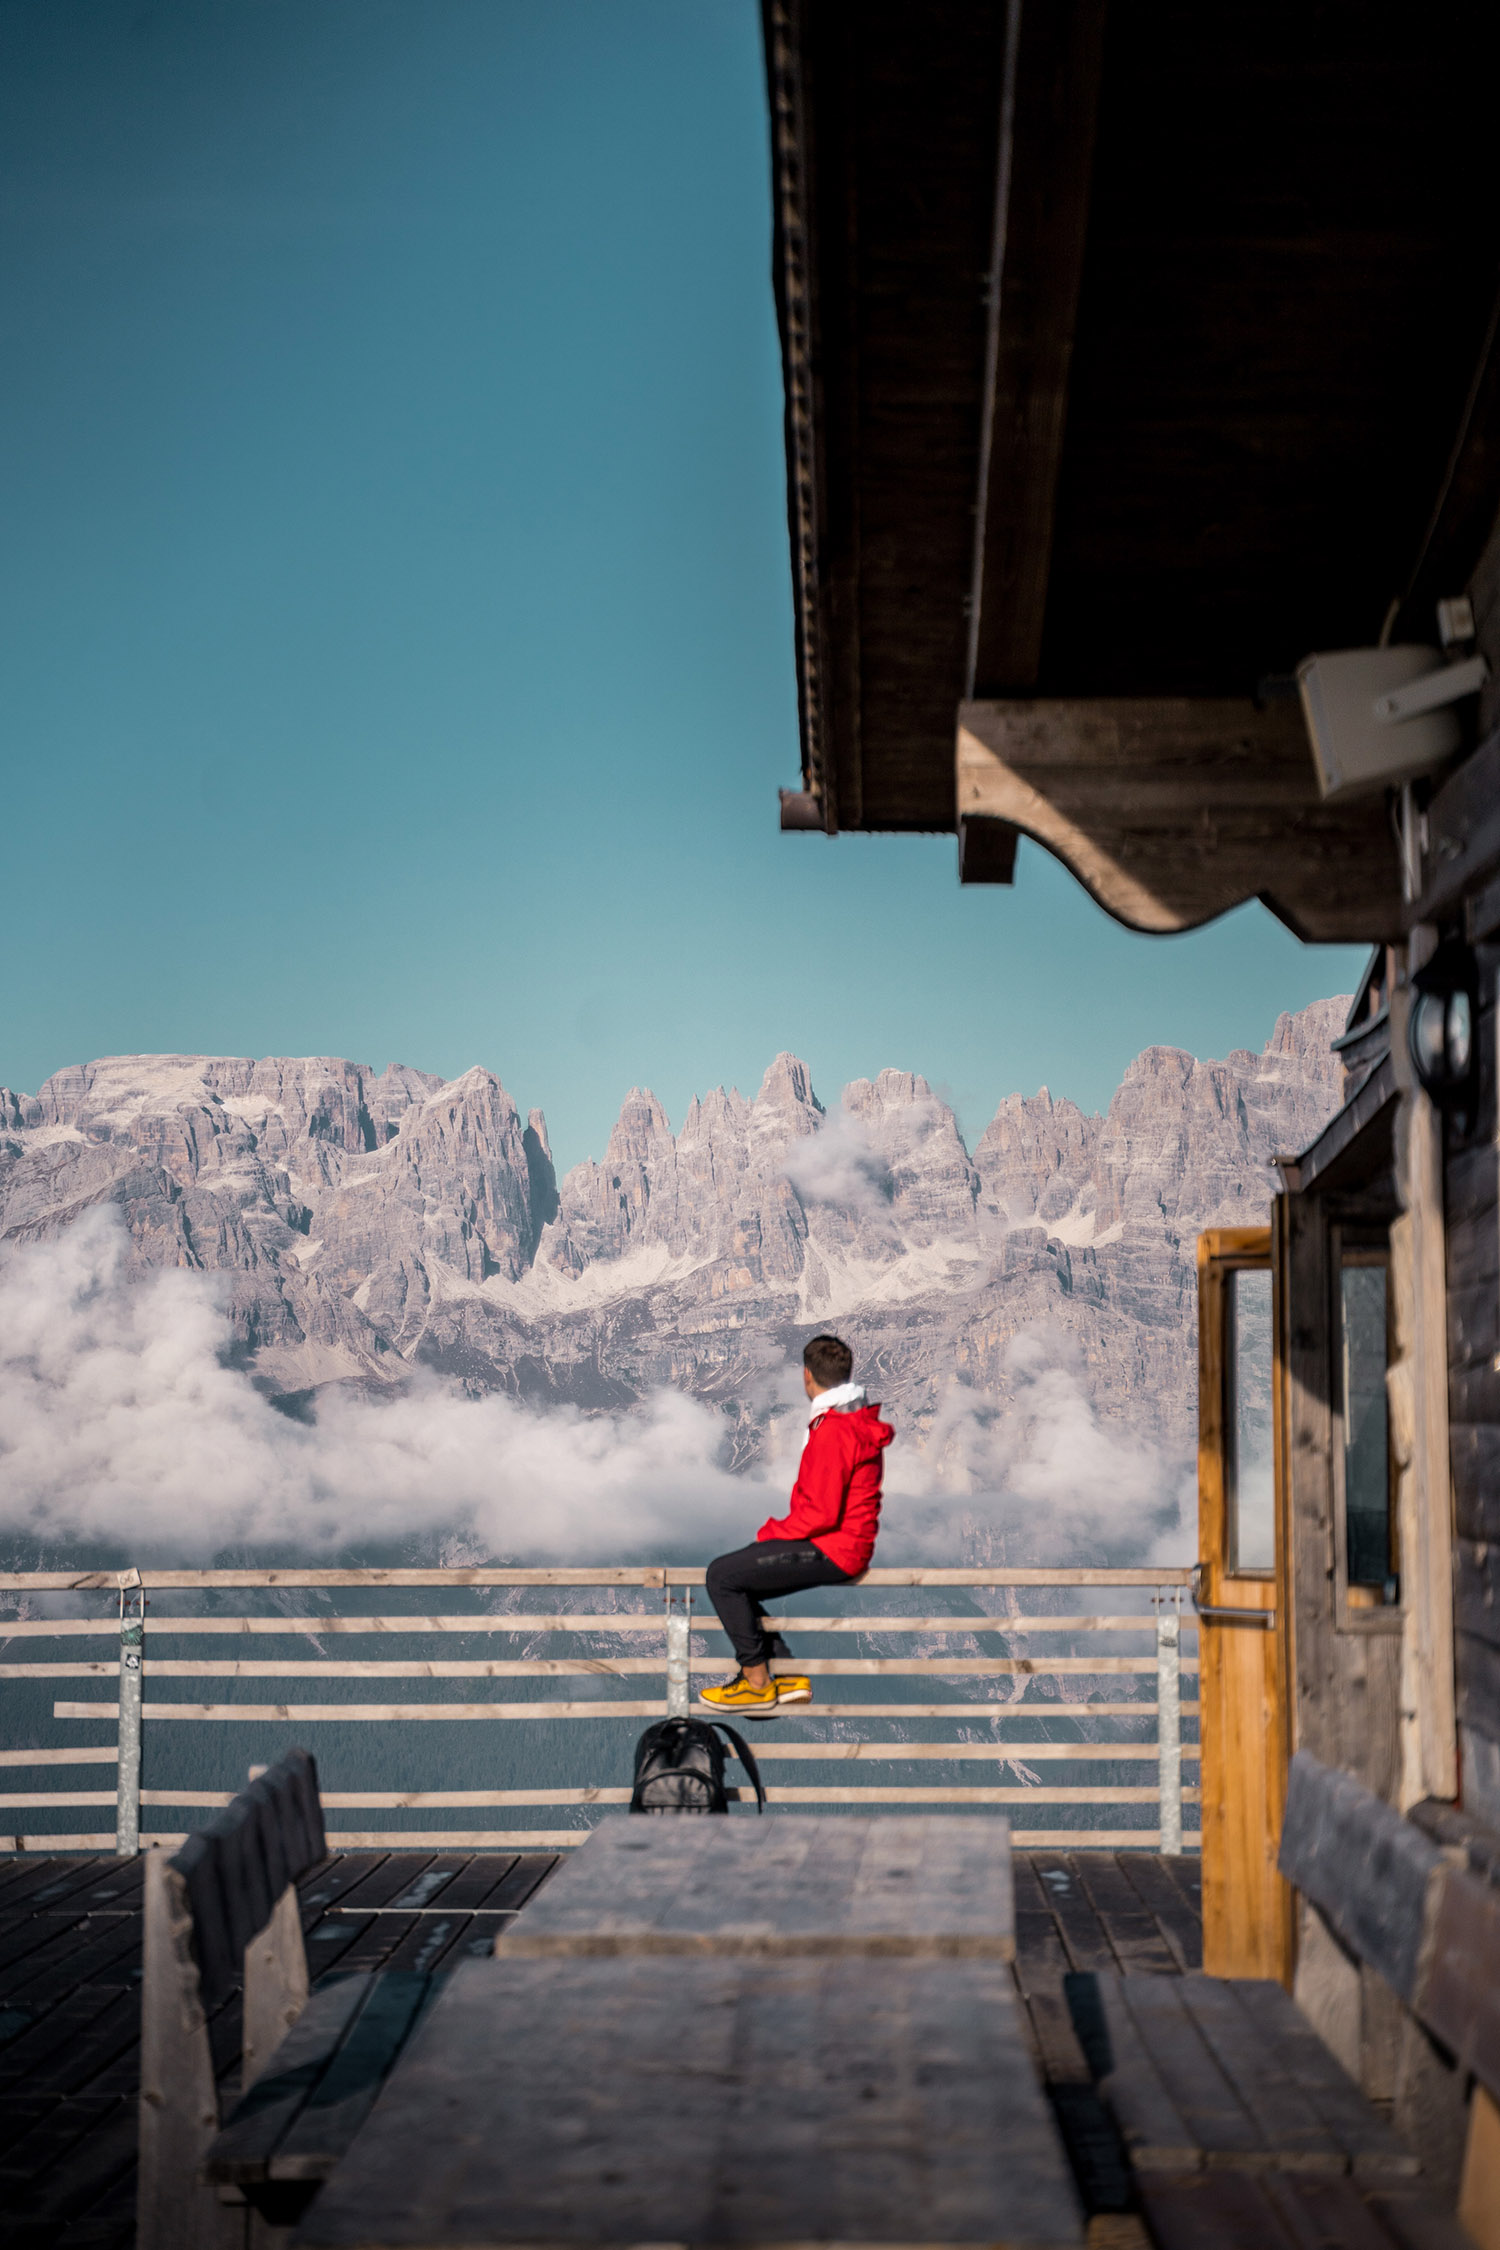 Auf in unglaubliche Bergwelten: Der Fotograf kennt die schönsten Spots in den Dolomiten.